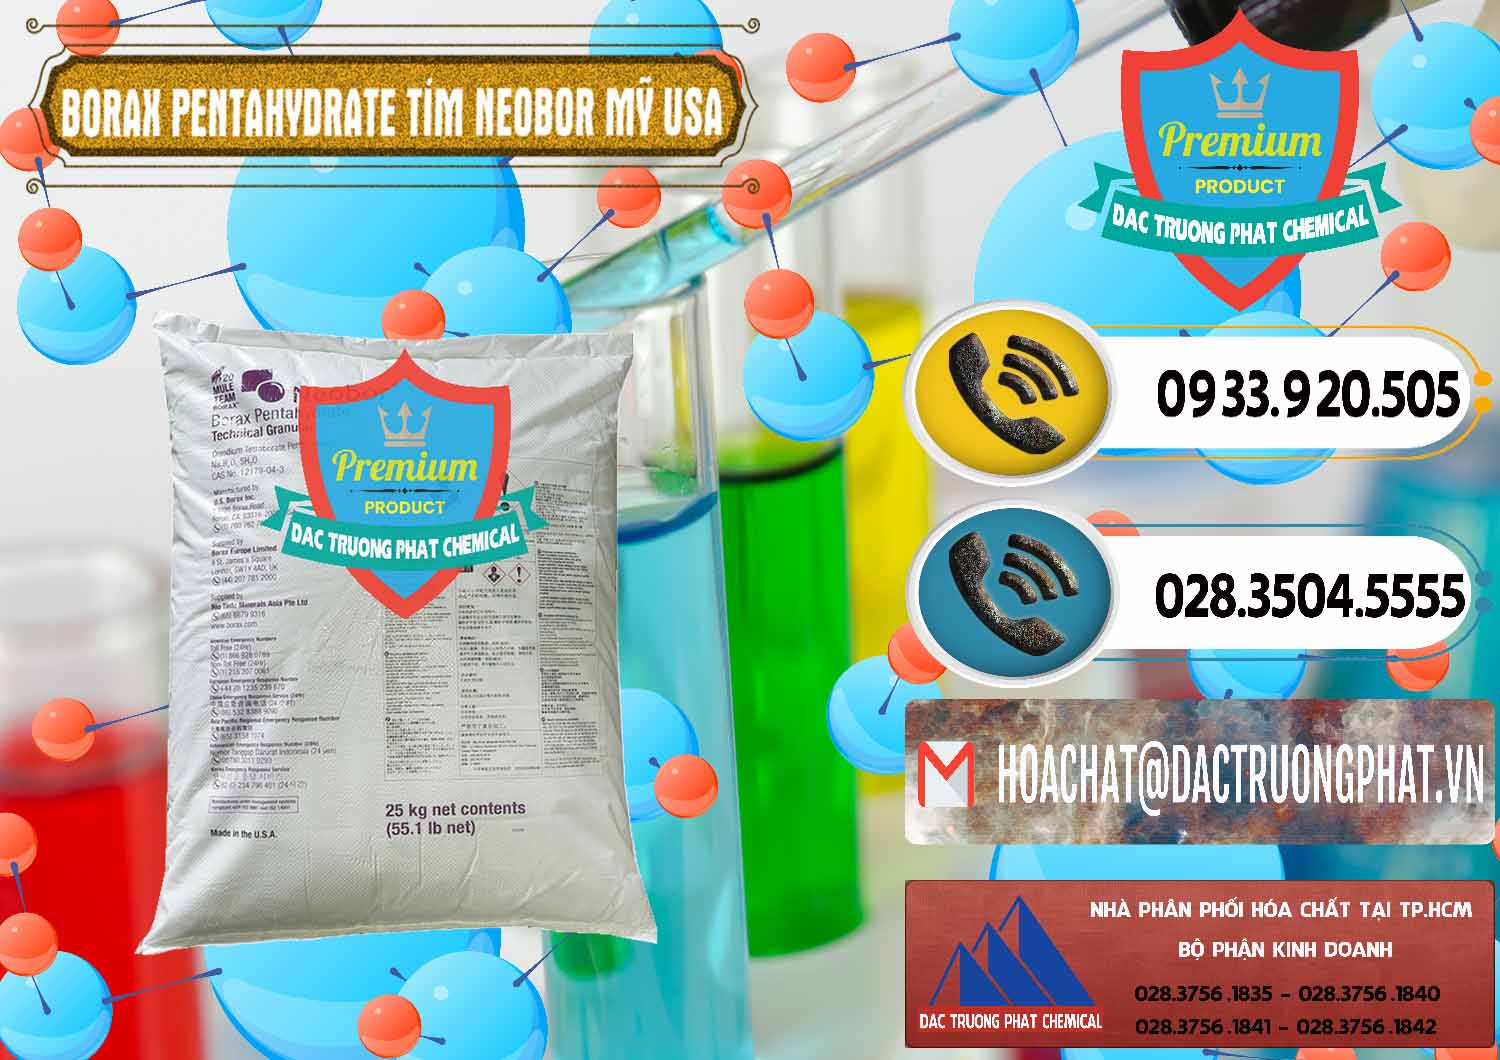 Đơn vị kinh doanh _ bán Borax Pentahydrate Bao Tím Neobor TG Mỹ Usa - 0277 - Nơi chuyên kinh doanh _ phân phối hóa chất tại TP.HCM - hoachatdetnhuom.vn